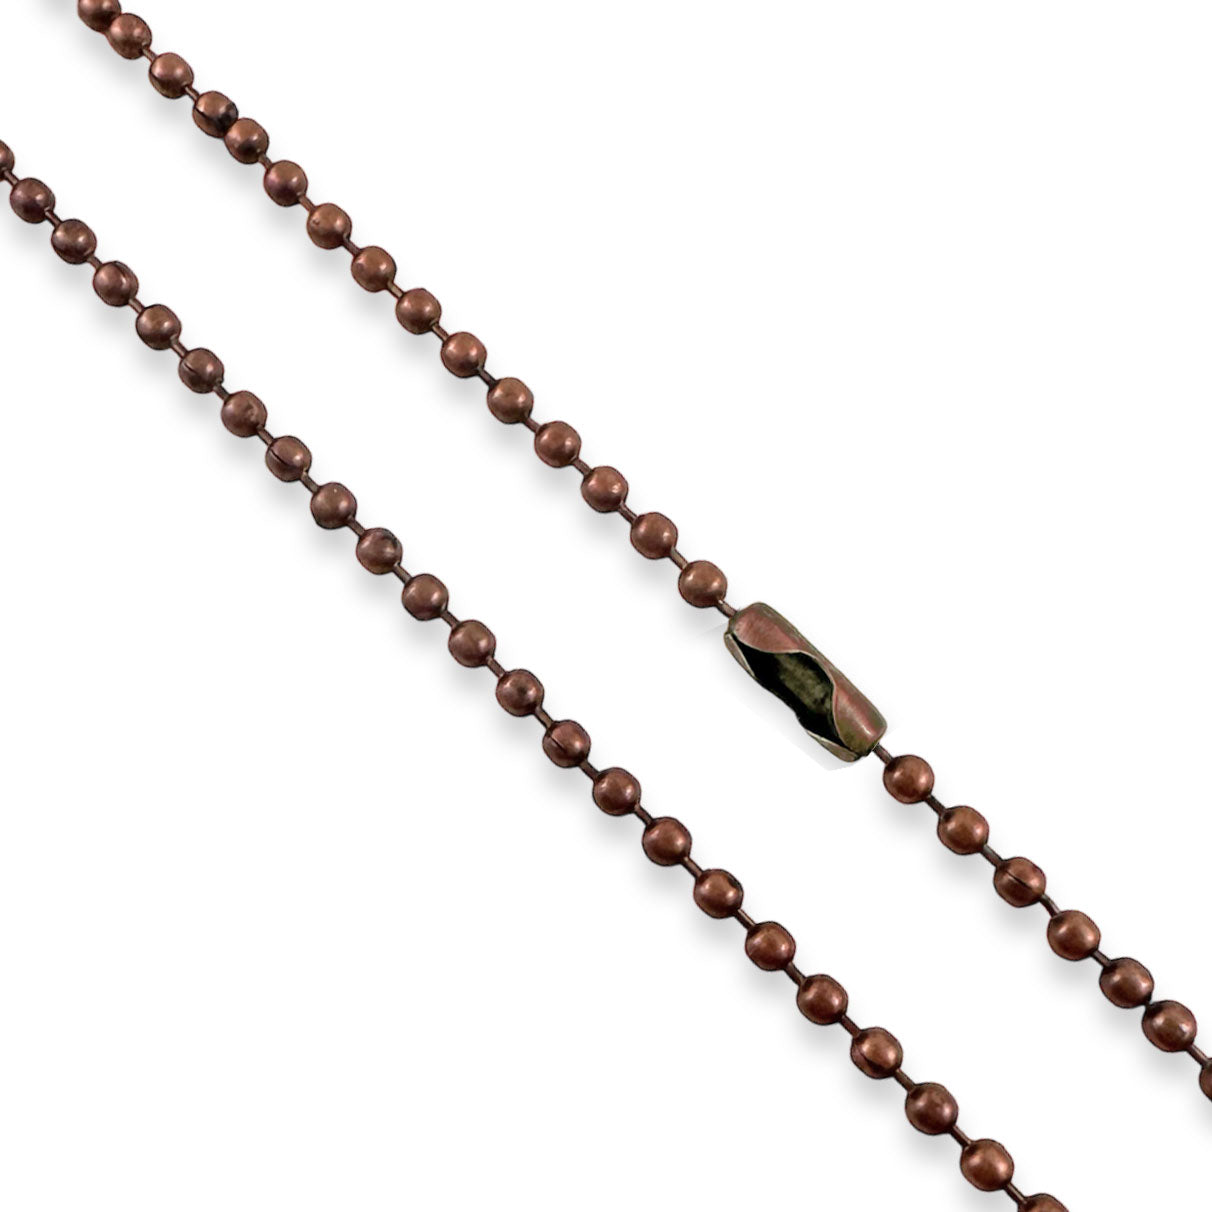 Bulk Antique Copper Ball Chain Necklaces 24" - Select Quantity